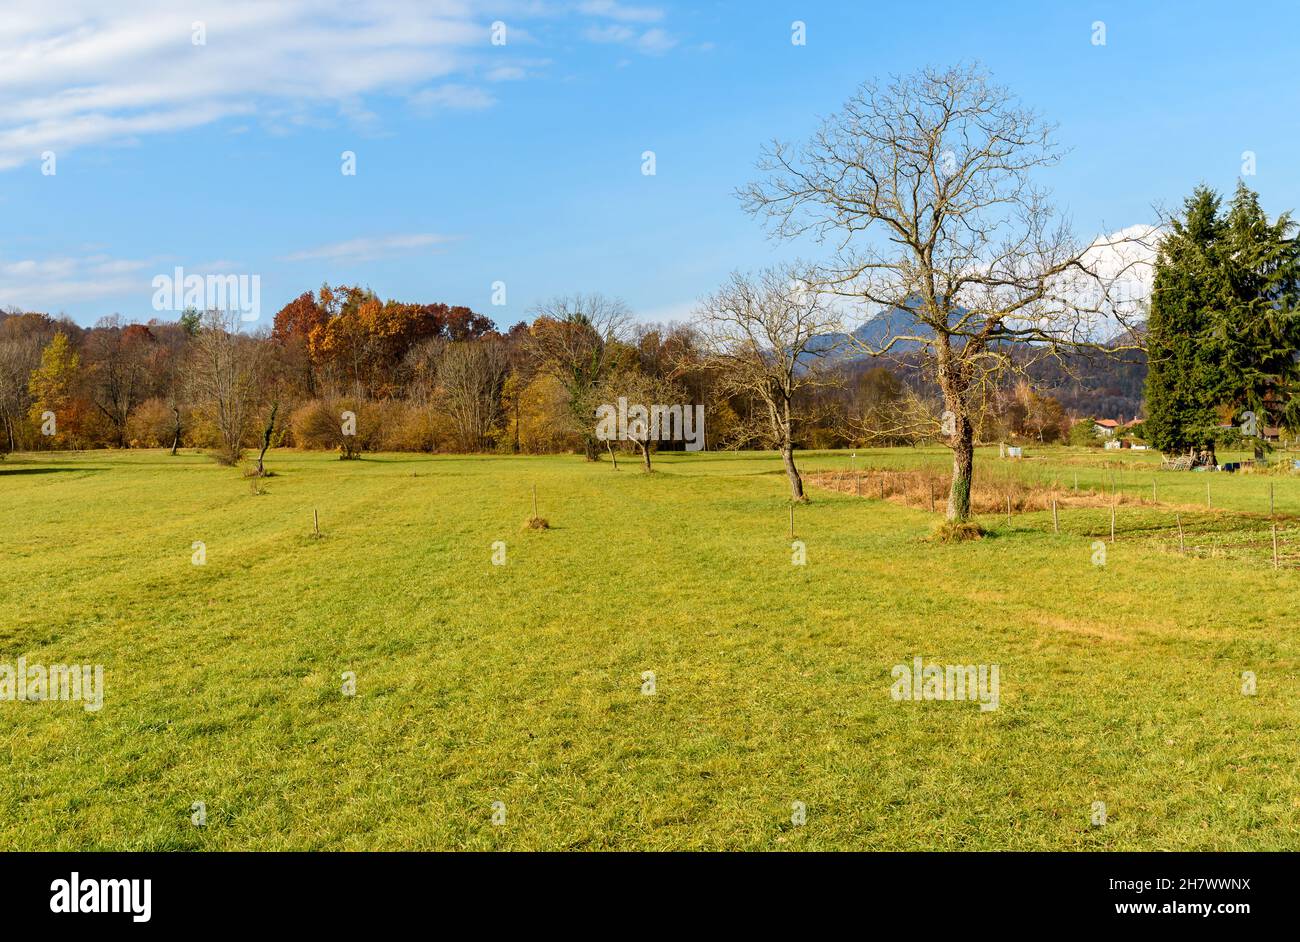 Ländliche Landschaft in der Herbstsaison des kleinen italienischen Dorfes Brinzio im Tal Rasa in der Provinz Varese, Lombardei, Italien Stockfoto